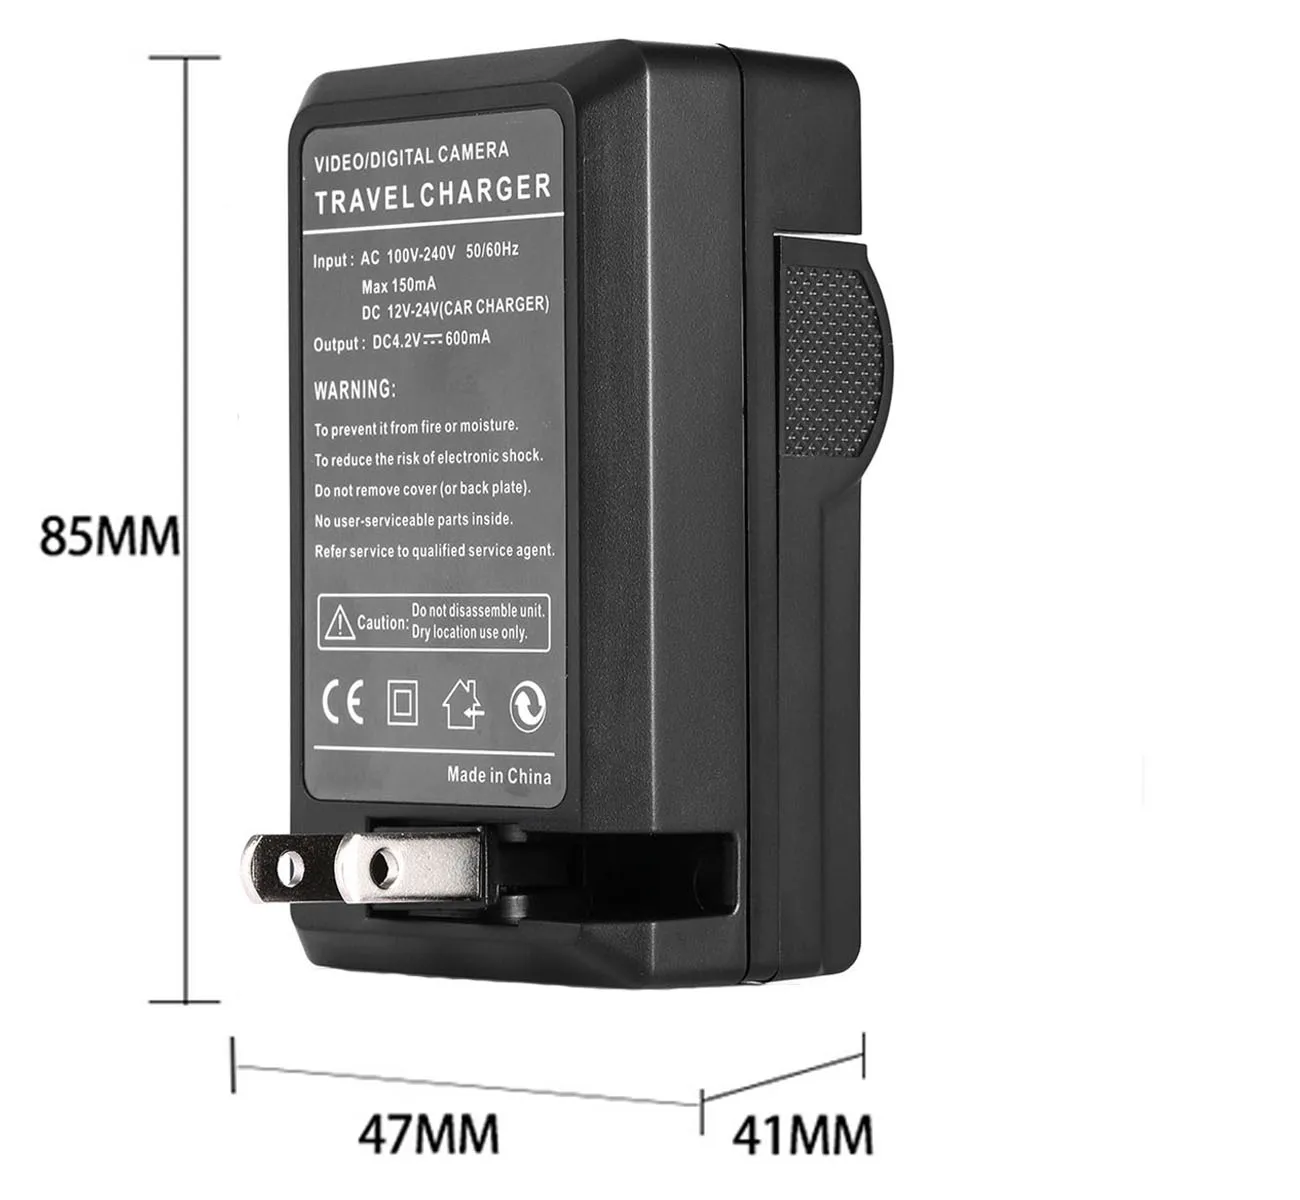 Battery Pack for Samsung VP-D303 VP-D303D VP-D303i VP-D303Di Digital Video Camcorder